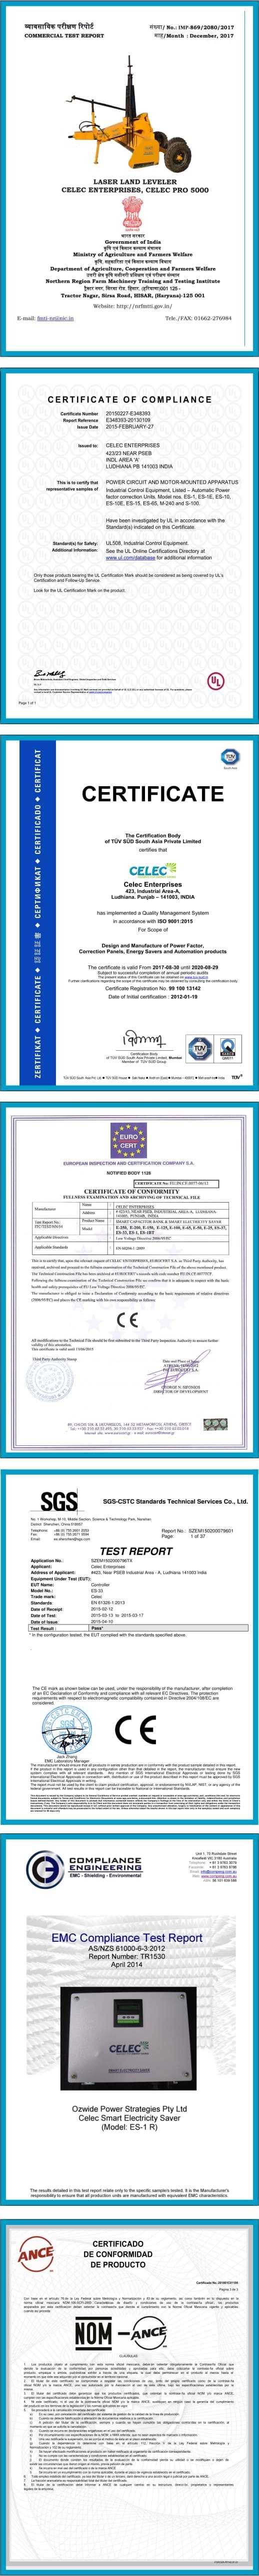 celec-certificates